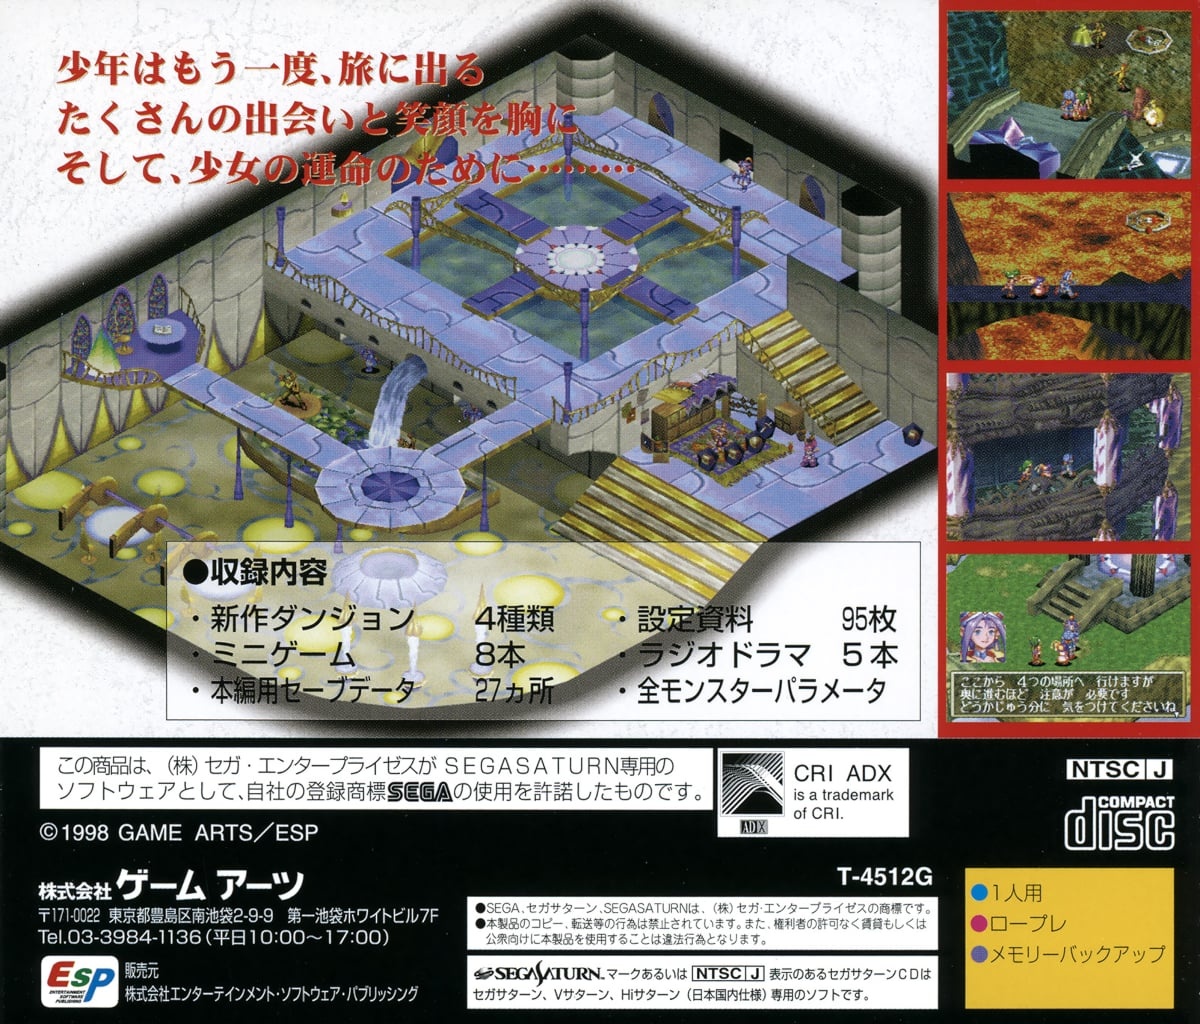 Capa do jogo Grandia Digital Museum